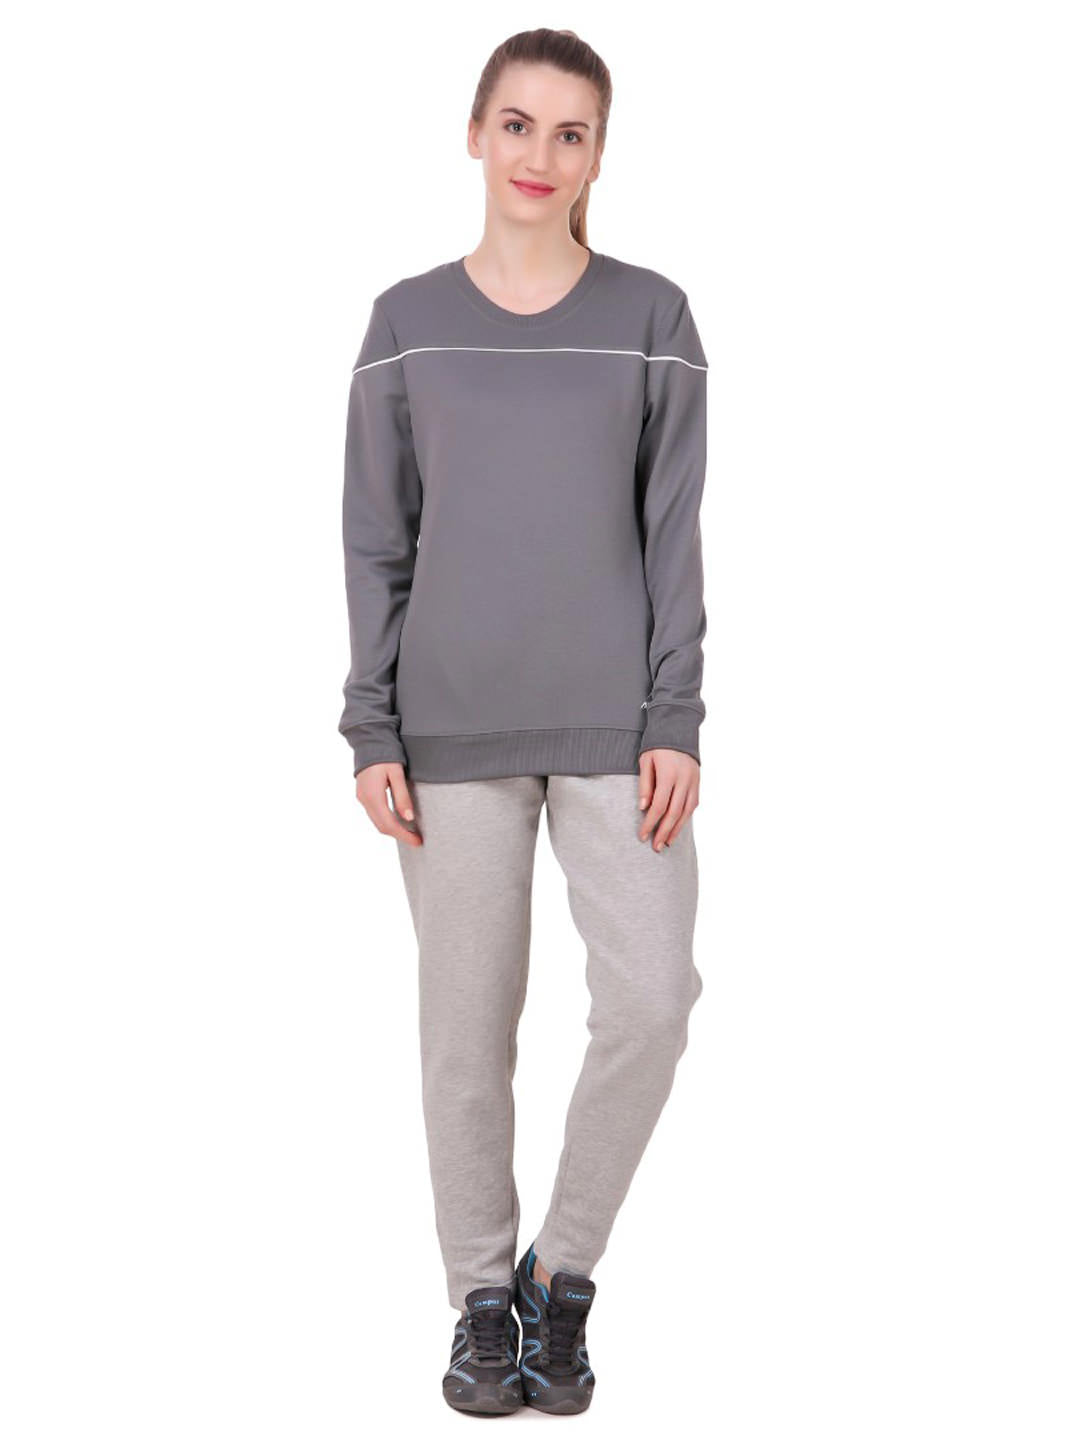 Alcis Women Grey Solid Sweatshirt